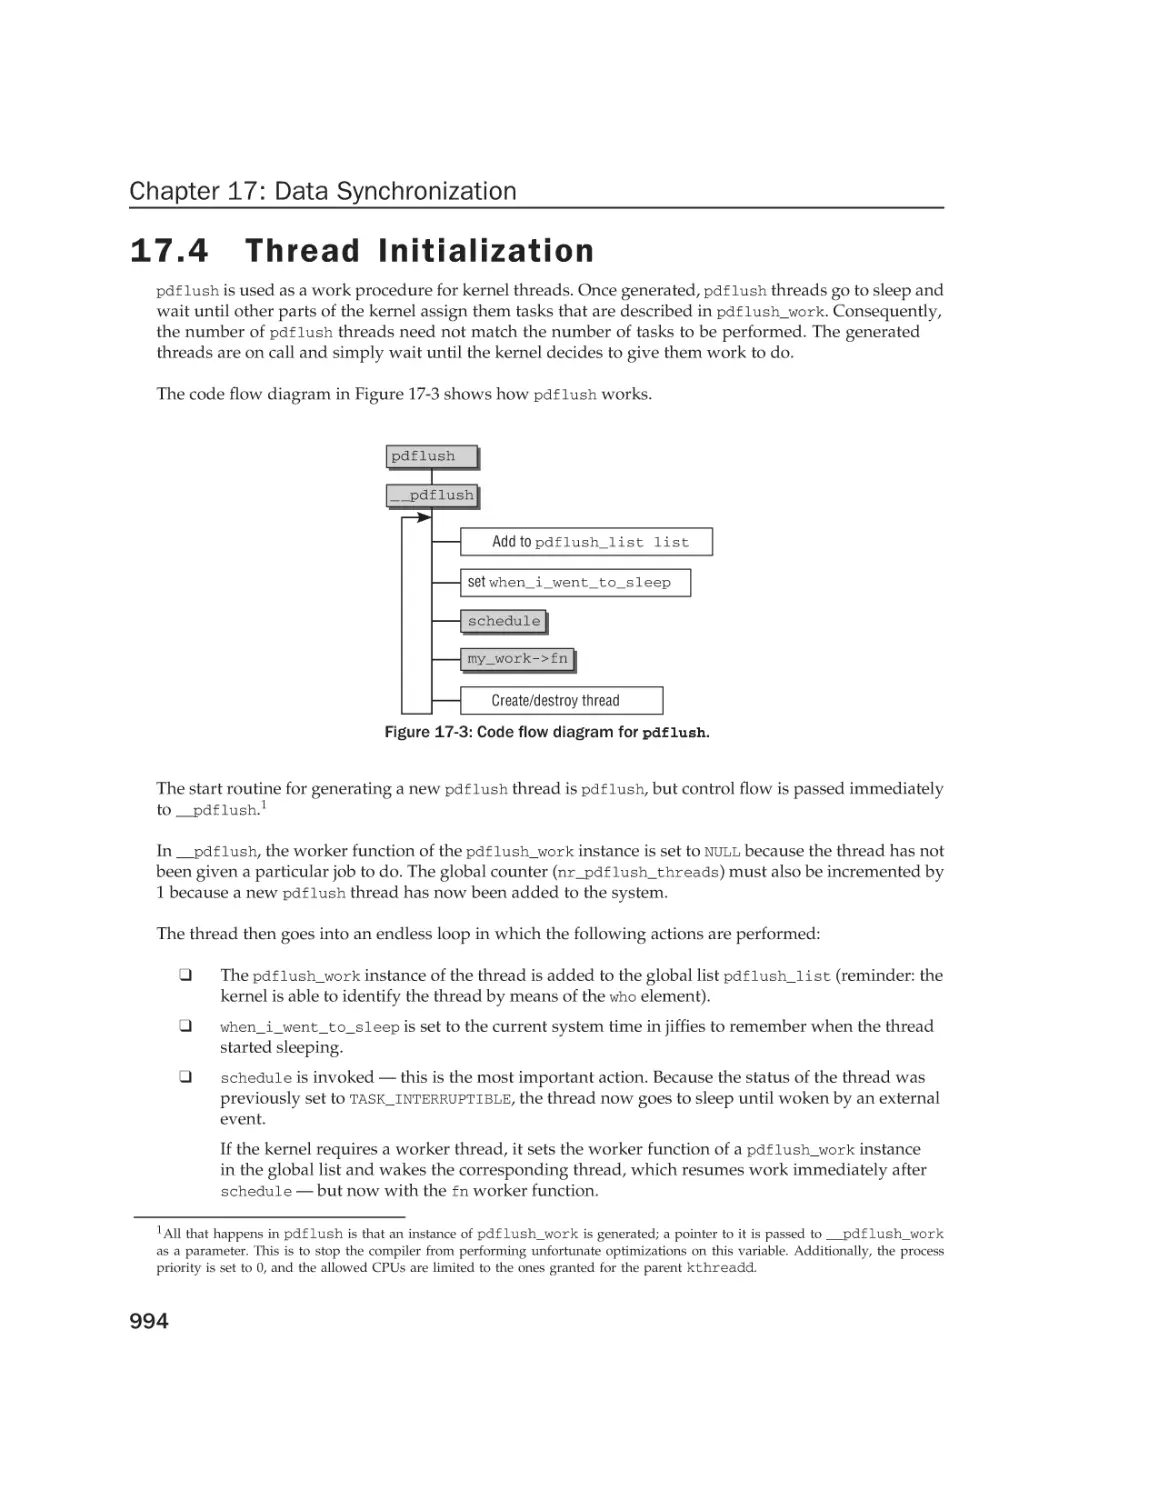 17.4 Thread Initialization